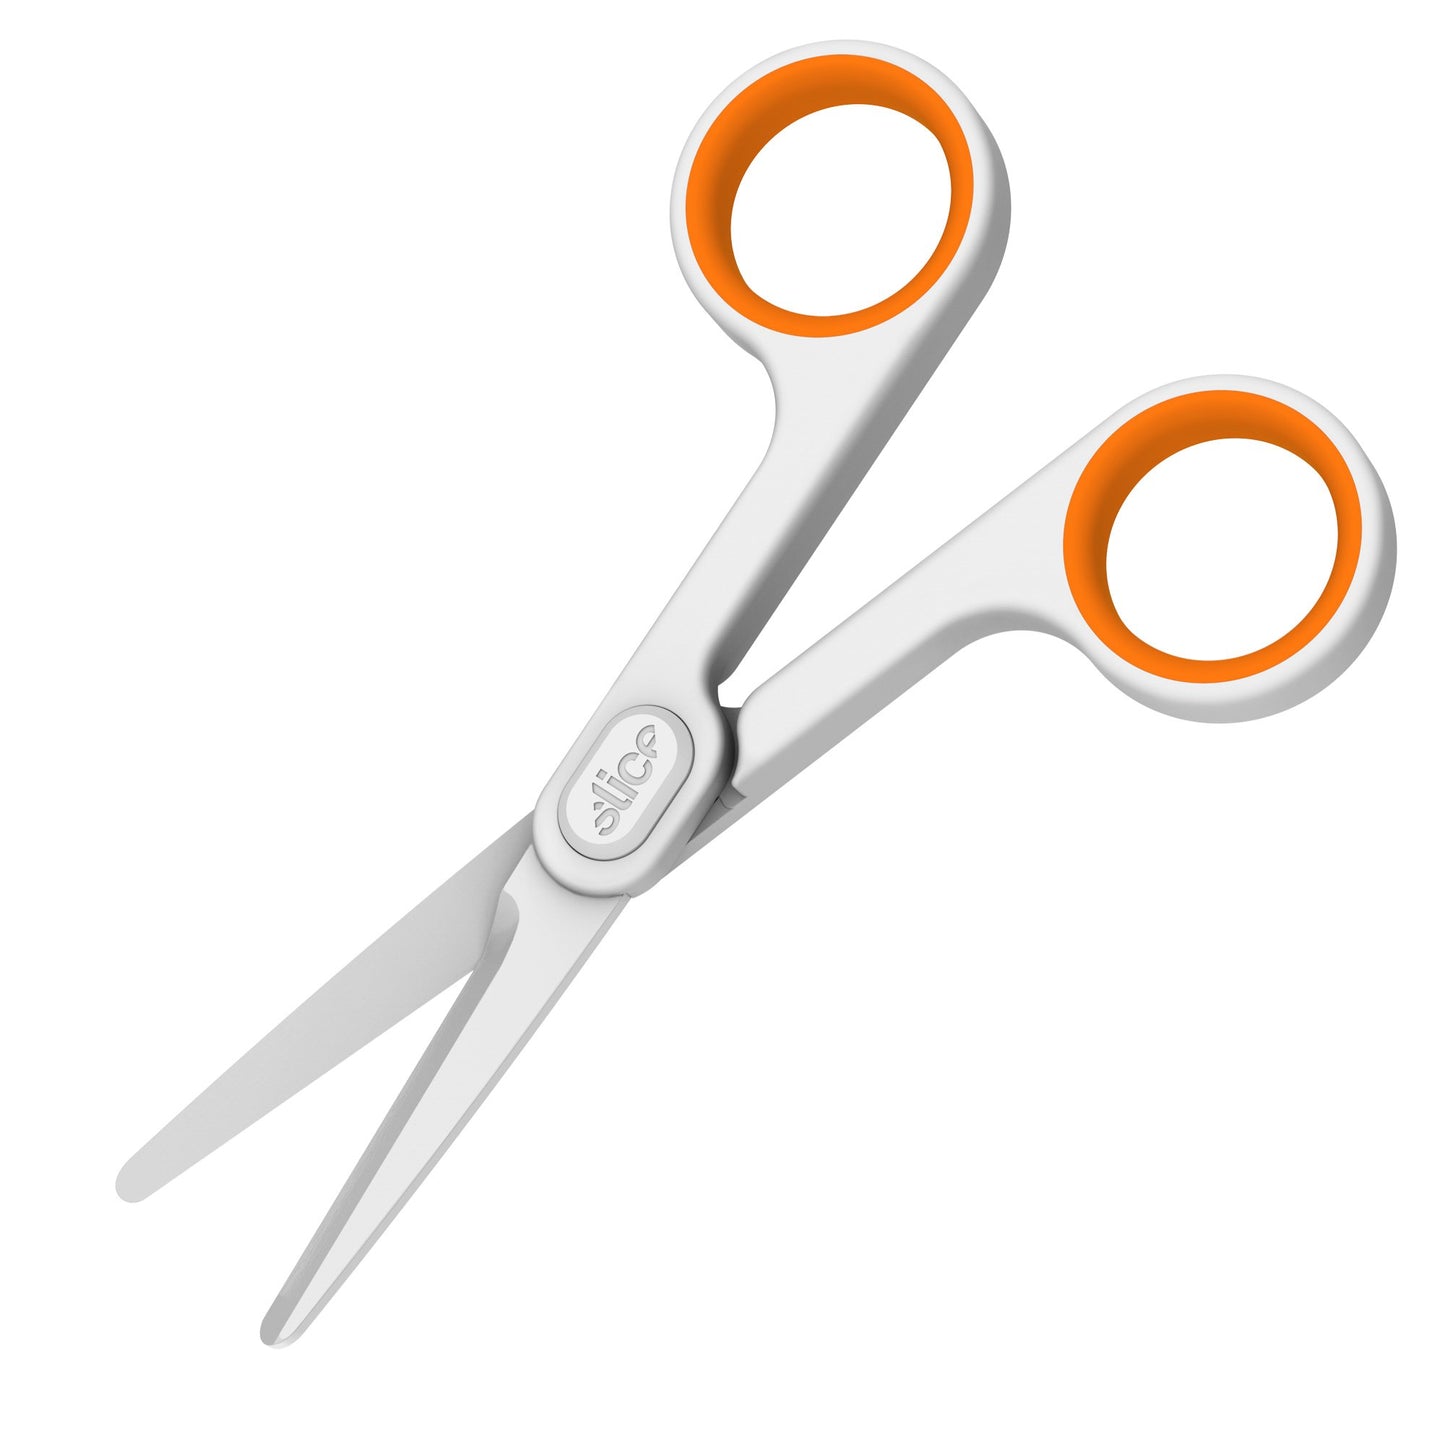 The Slice® 10544 Small Scissors